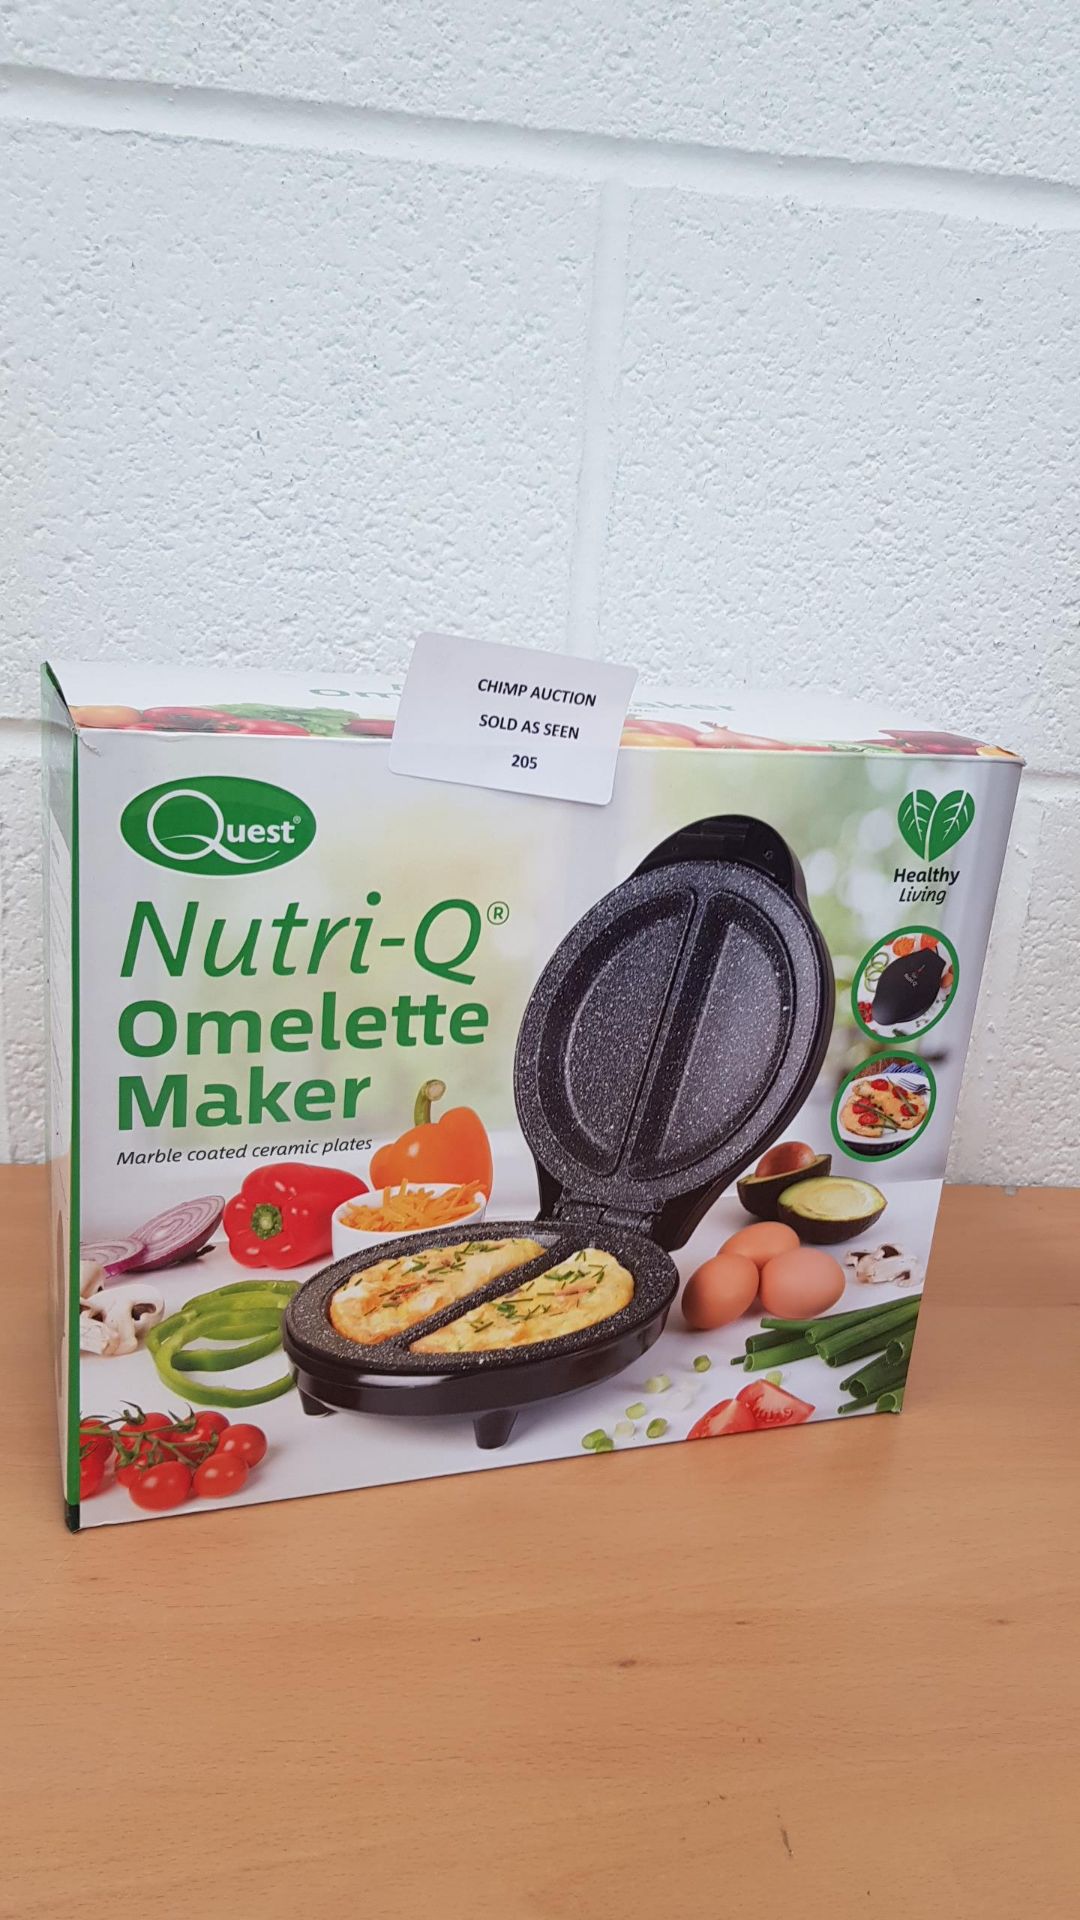 Quest Nutri-Q Omelette Maker